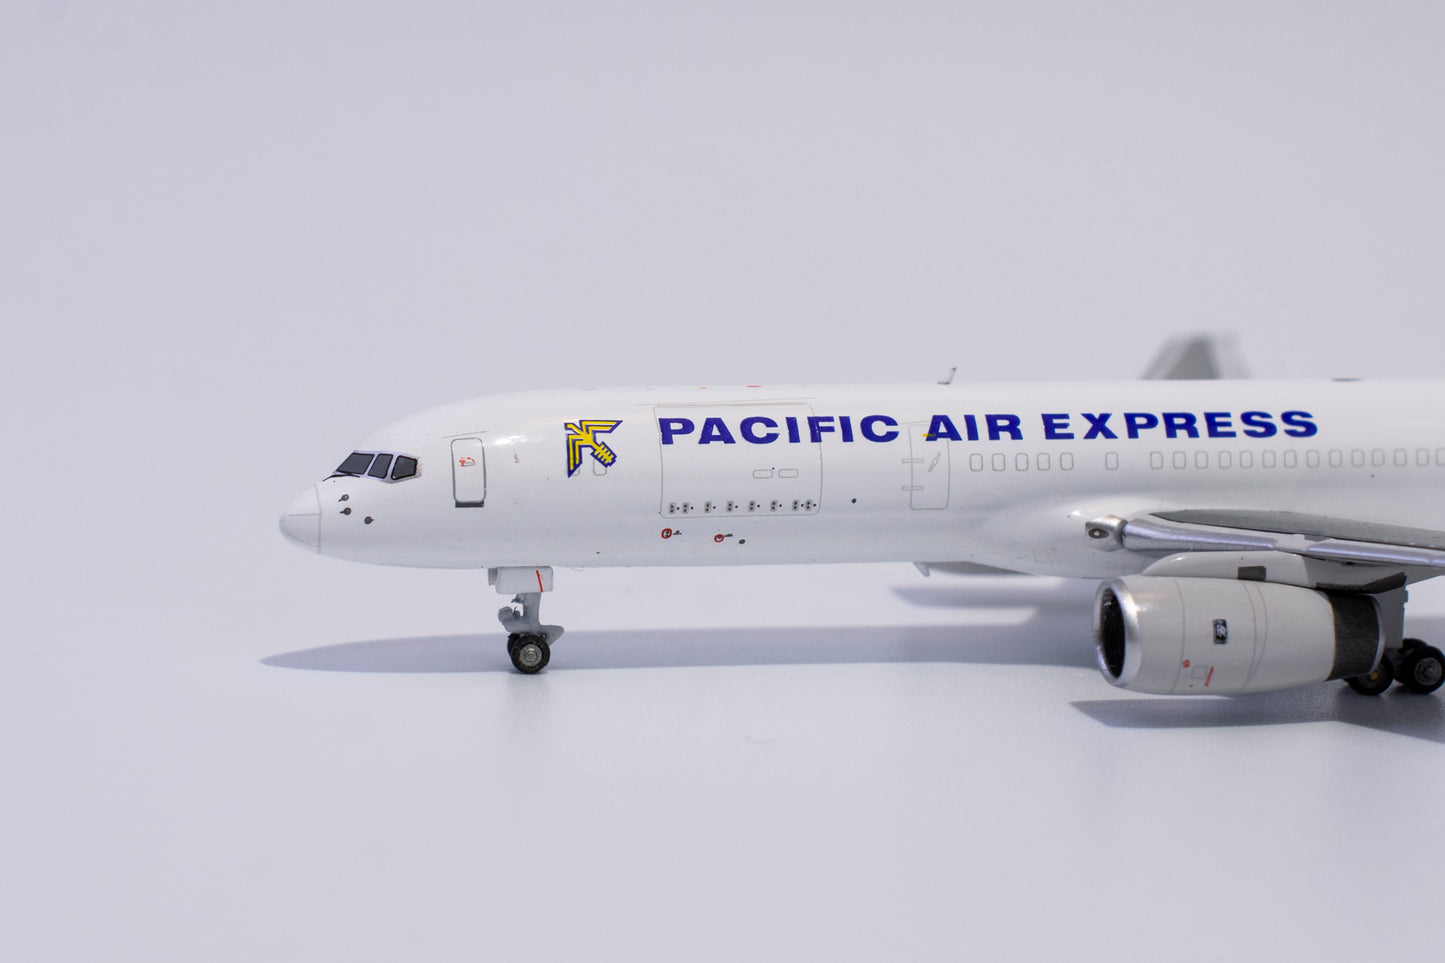 1:400 NG Models Pacific Air Express Boeing 757-200PCF VH-PQA 53166